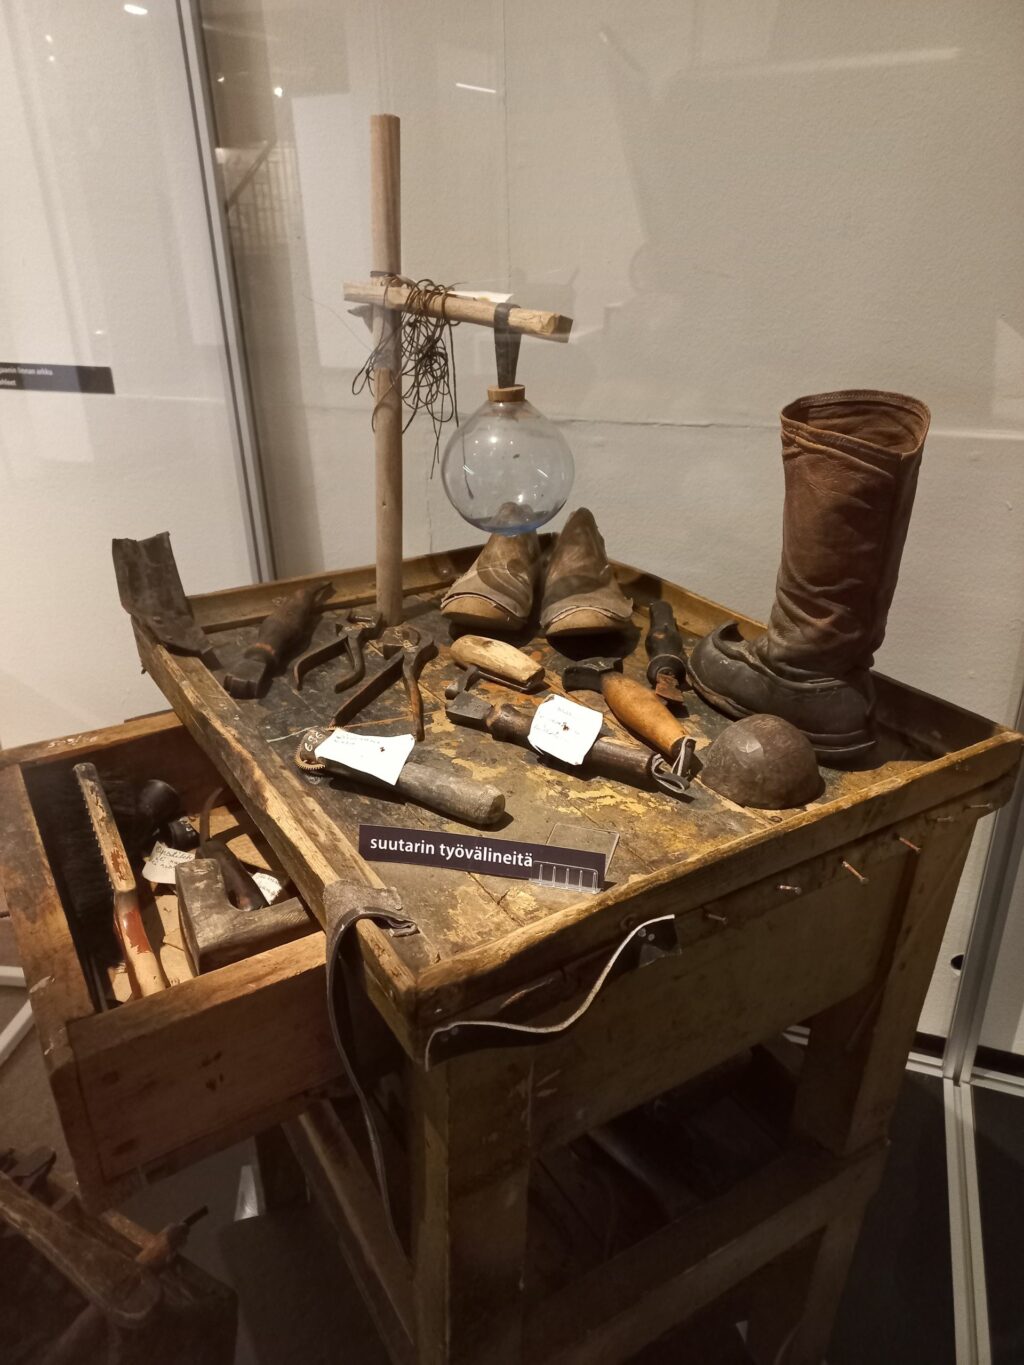 Vanhoja työkaluja puisella pöydällä